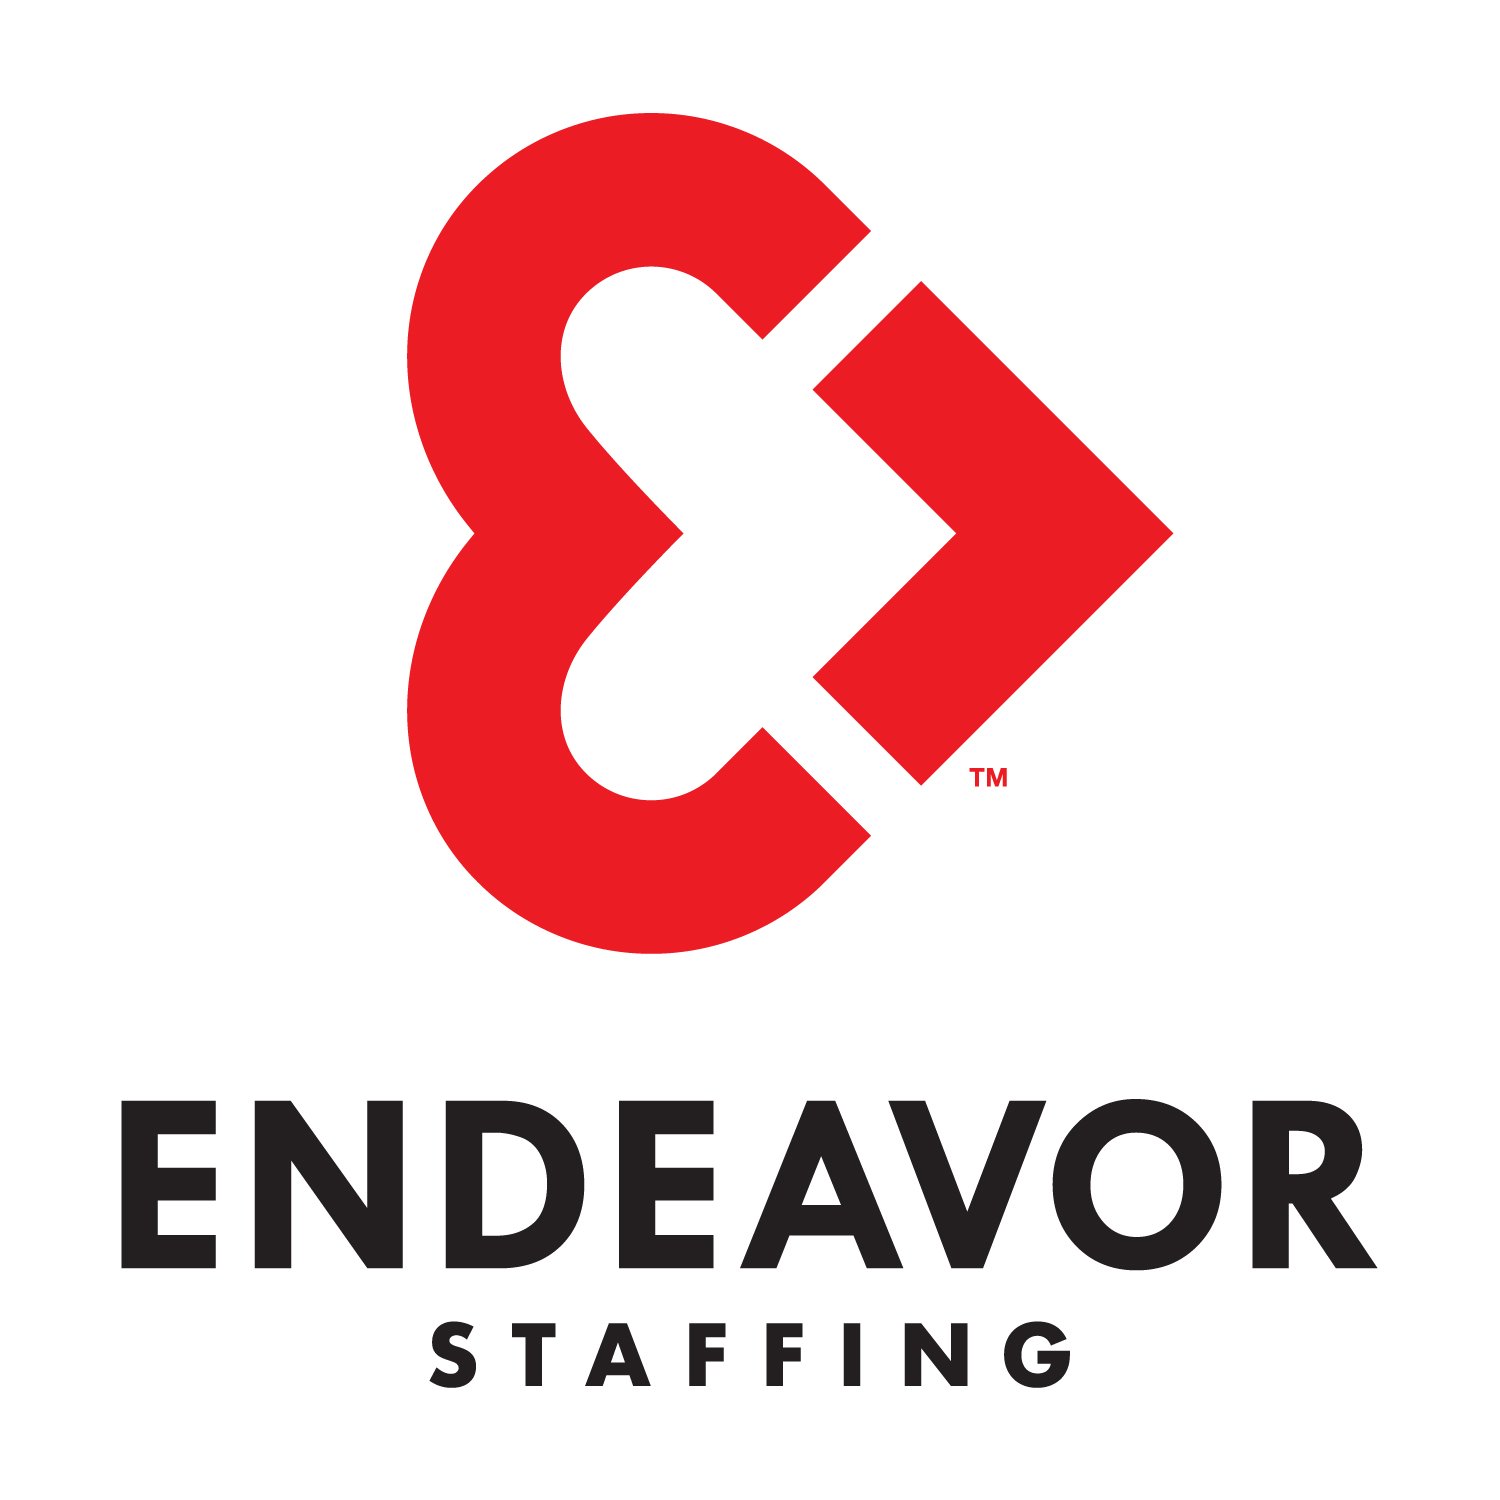 Endeavor Staffing